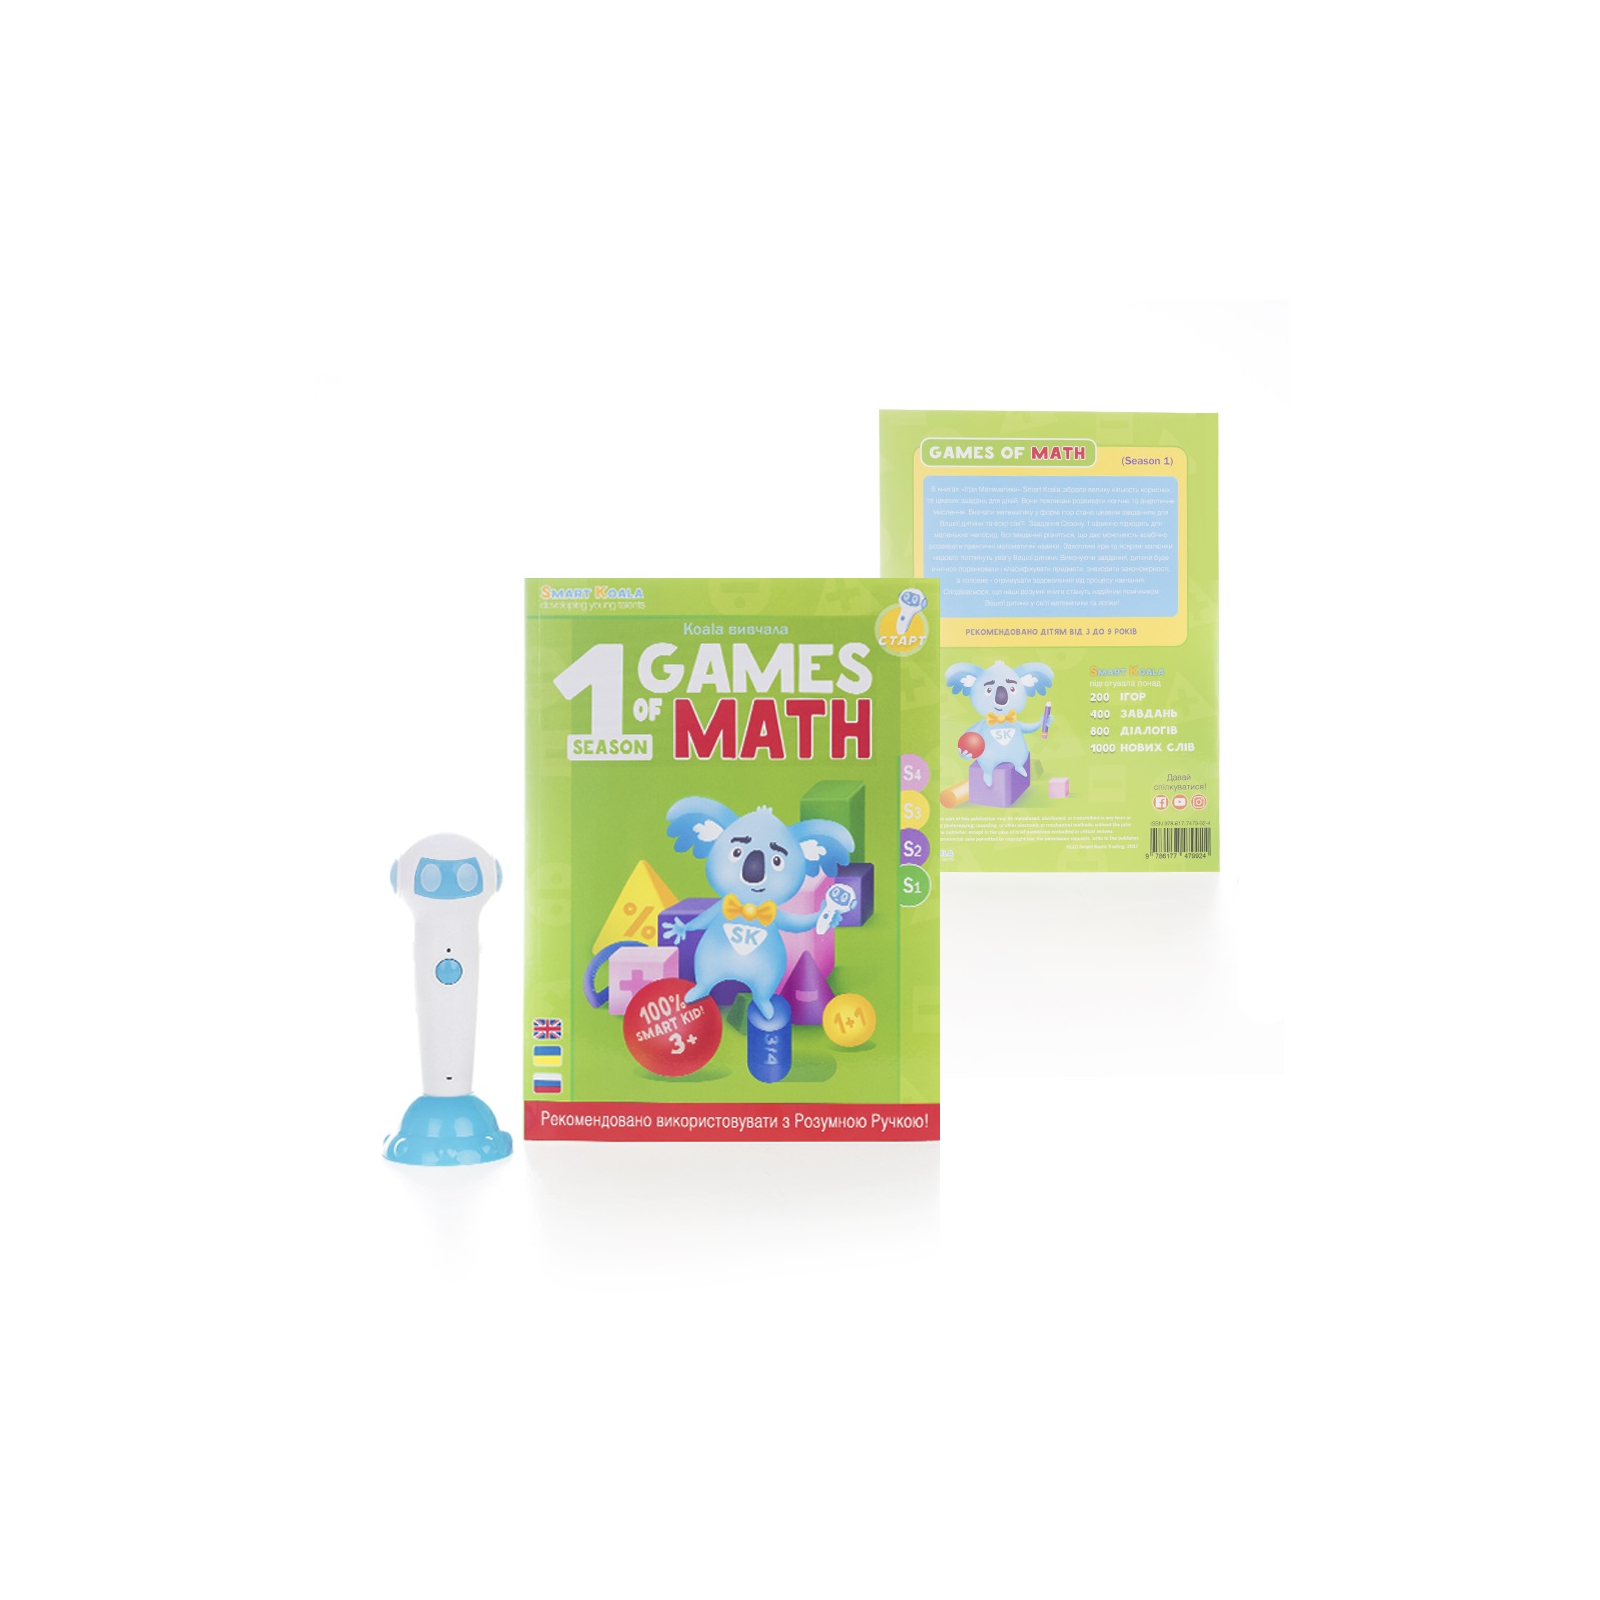 Інтерактивна іграшка Smart Koala развивающая книга The Games of Math (Season 1) №1 (SKBGMS1) зображення 2